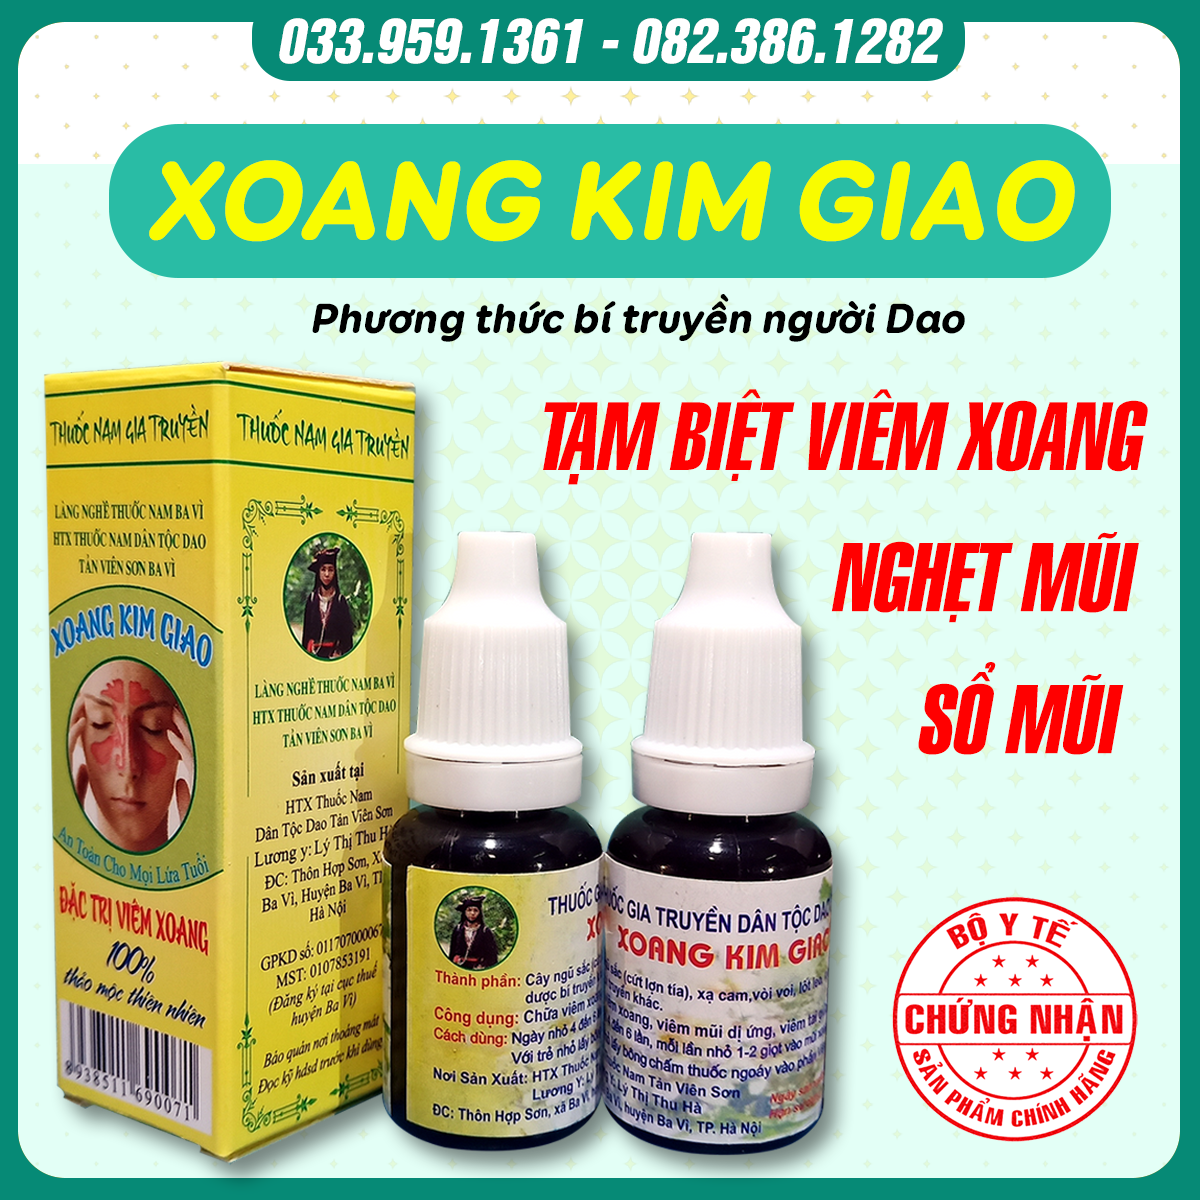 Xoang Kim Giao - Bài thuốc gia truyền chữa viêm xoang, viêm mũi từ thảo dược thiên nhiên núi Ba Vì